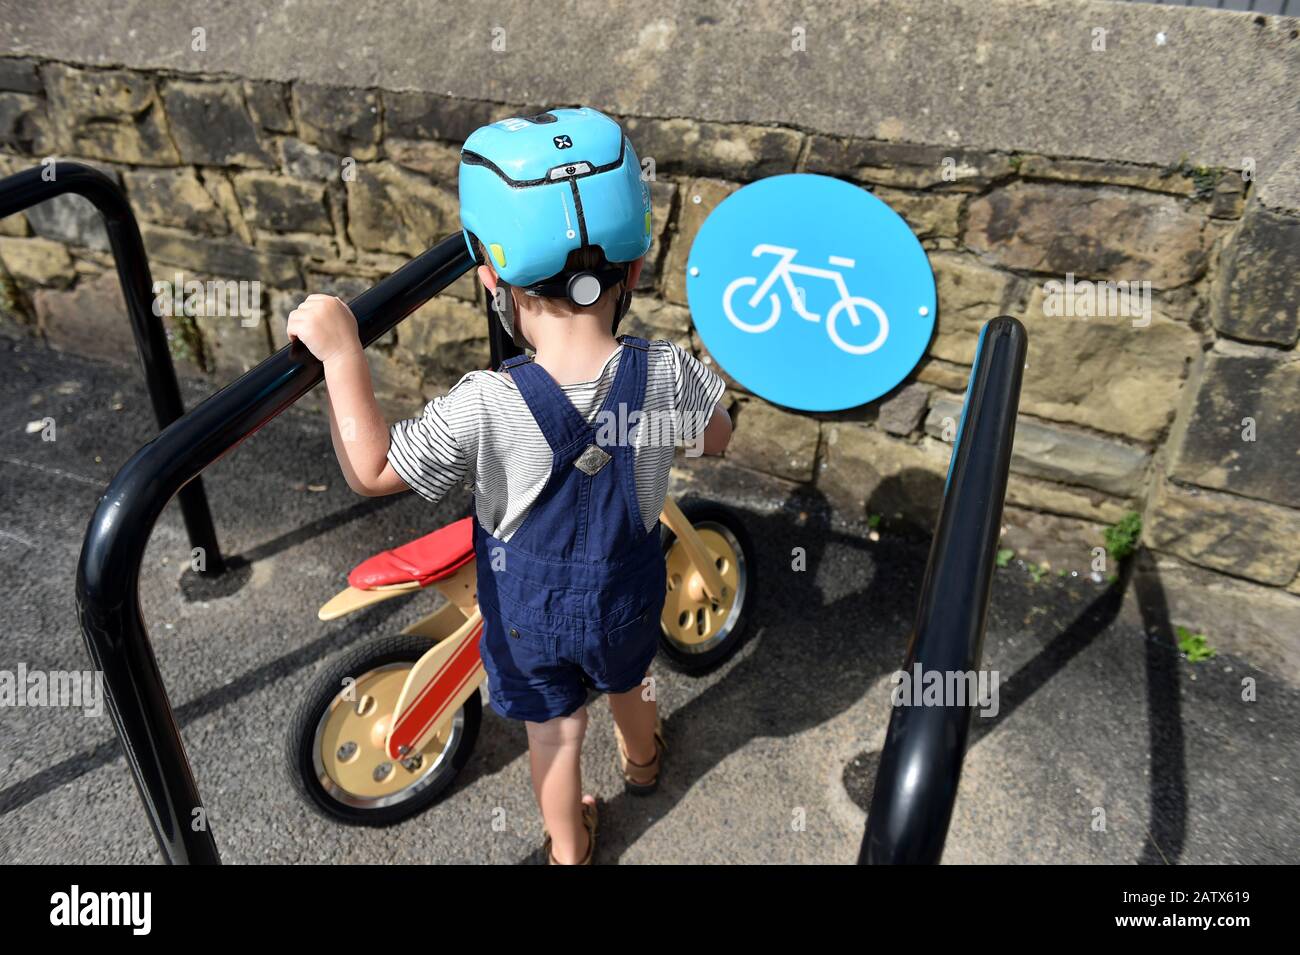 Equilibrio bicicleta estacionada en una bahía de ciclismo Reino Unido Foto de stock